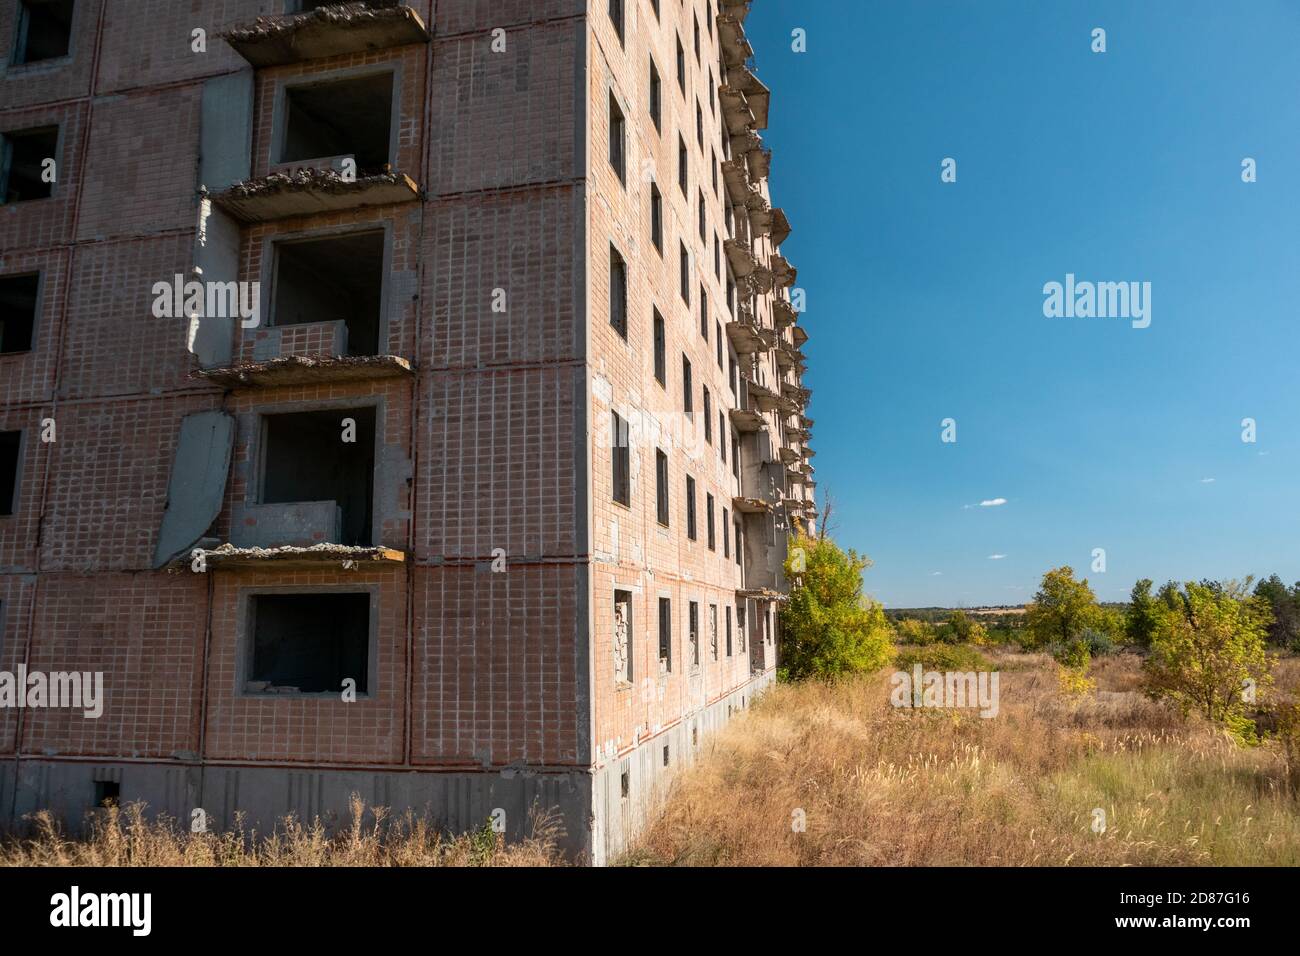 Alto edificio sovietico abbandonato a più piani con facciata piastrellata rossa sul paesaggio soleggiato autunnale. Città incompiuta di scienziati nucleari a Birky, Ucraina Foto Stock